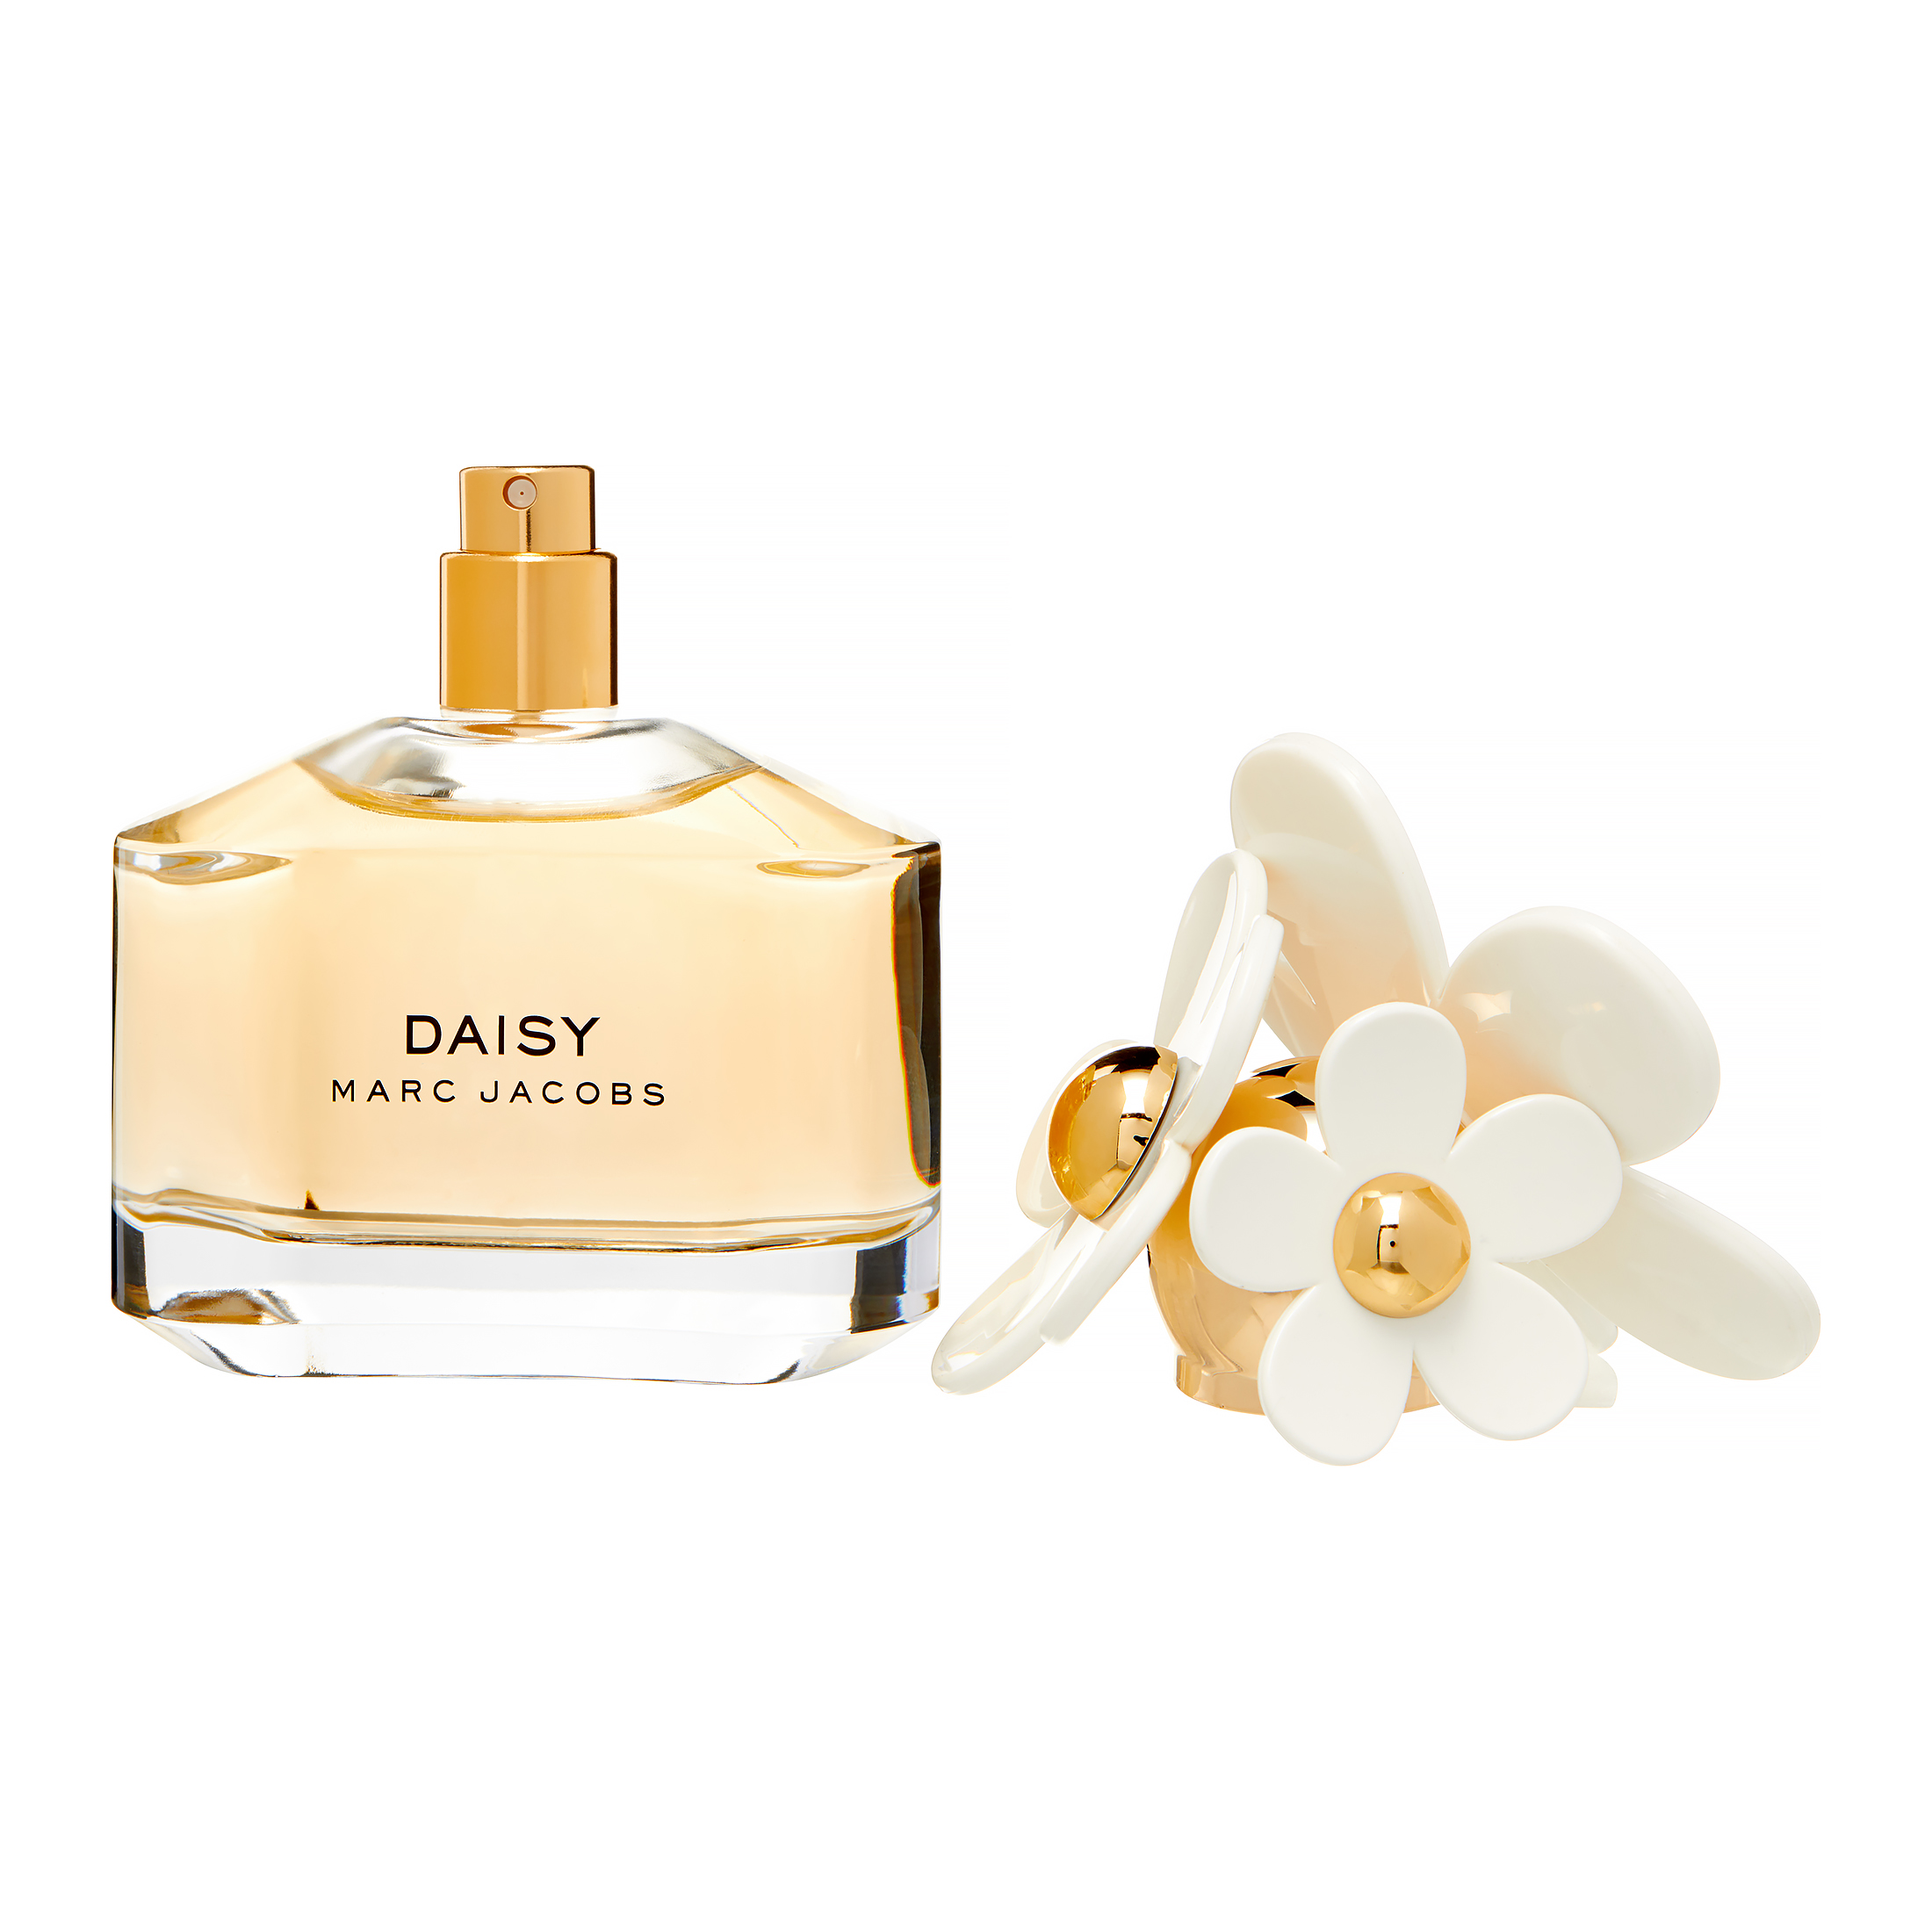 Marc Jacobs Daisy Eau De Toilette, Perfume for Women, 1.7 Oz - image 2 of 8